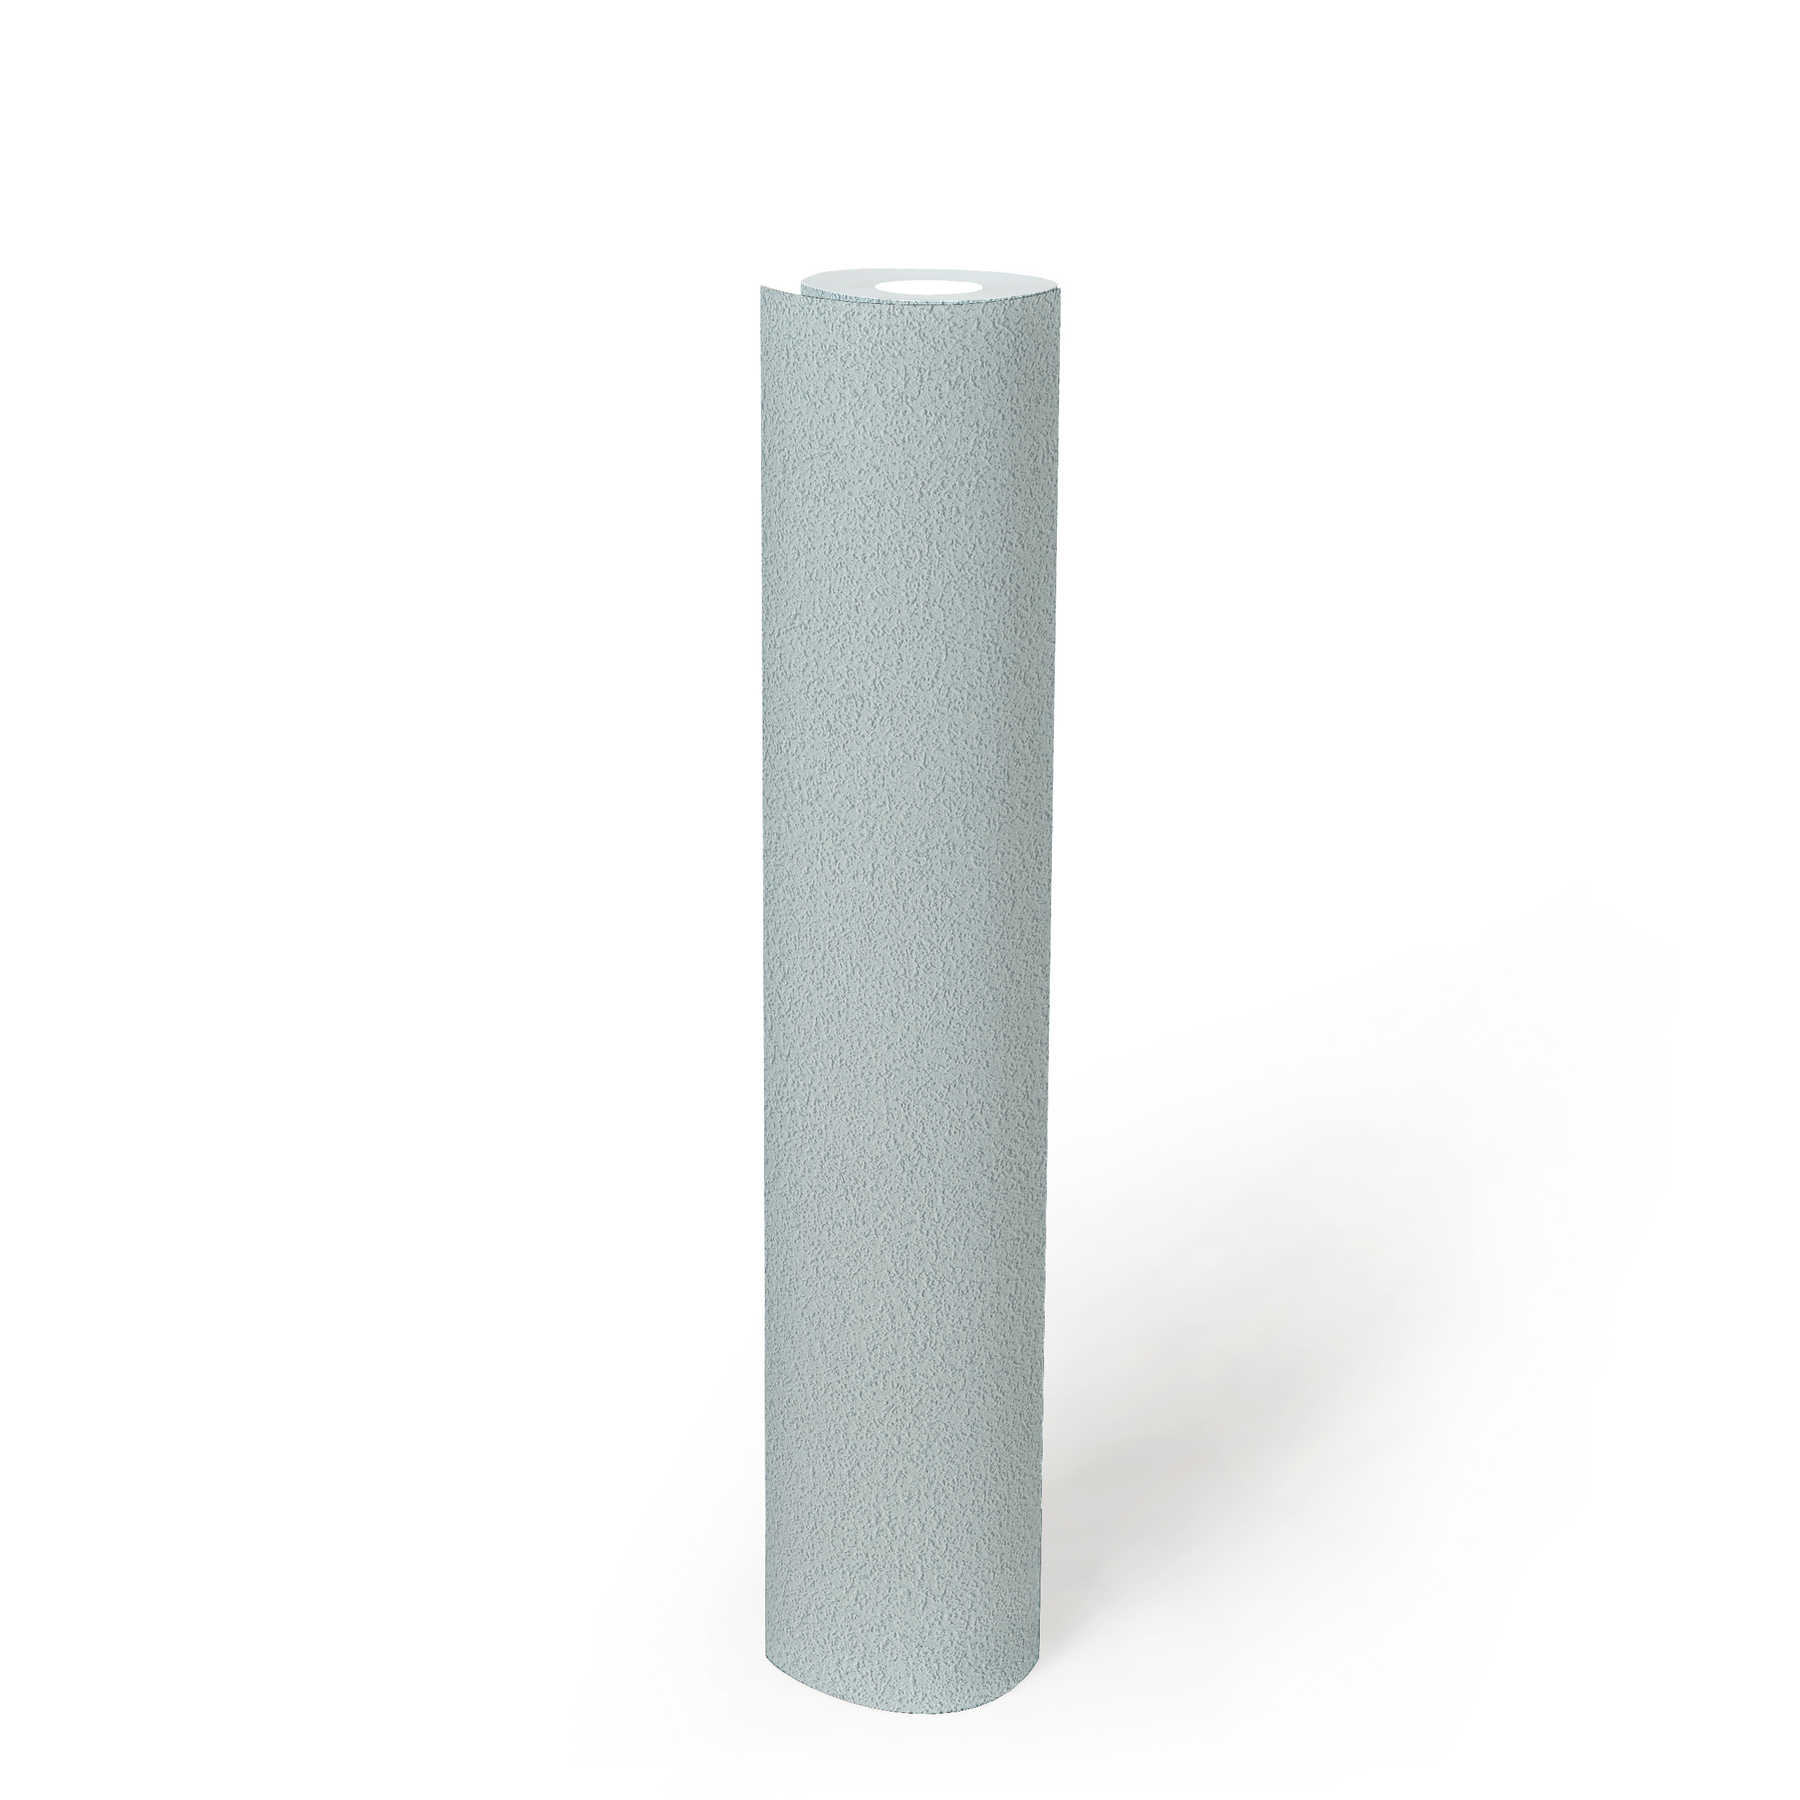             Papier peint uni avec structure de surface fine - bleu
        